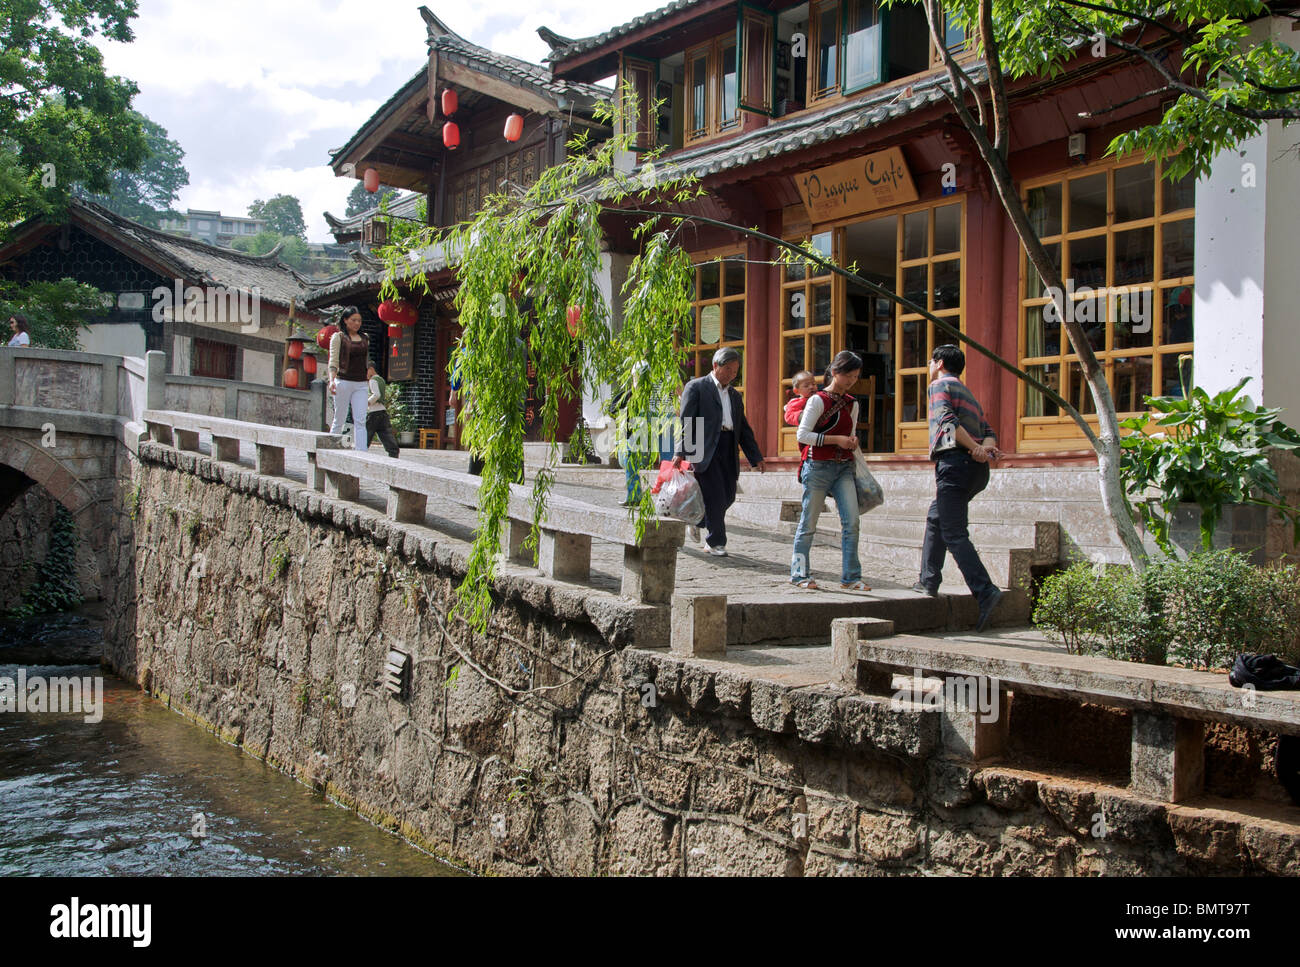 Canal and cafe Lijiang Old Town Yunnan China Stock Photo